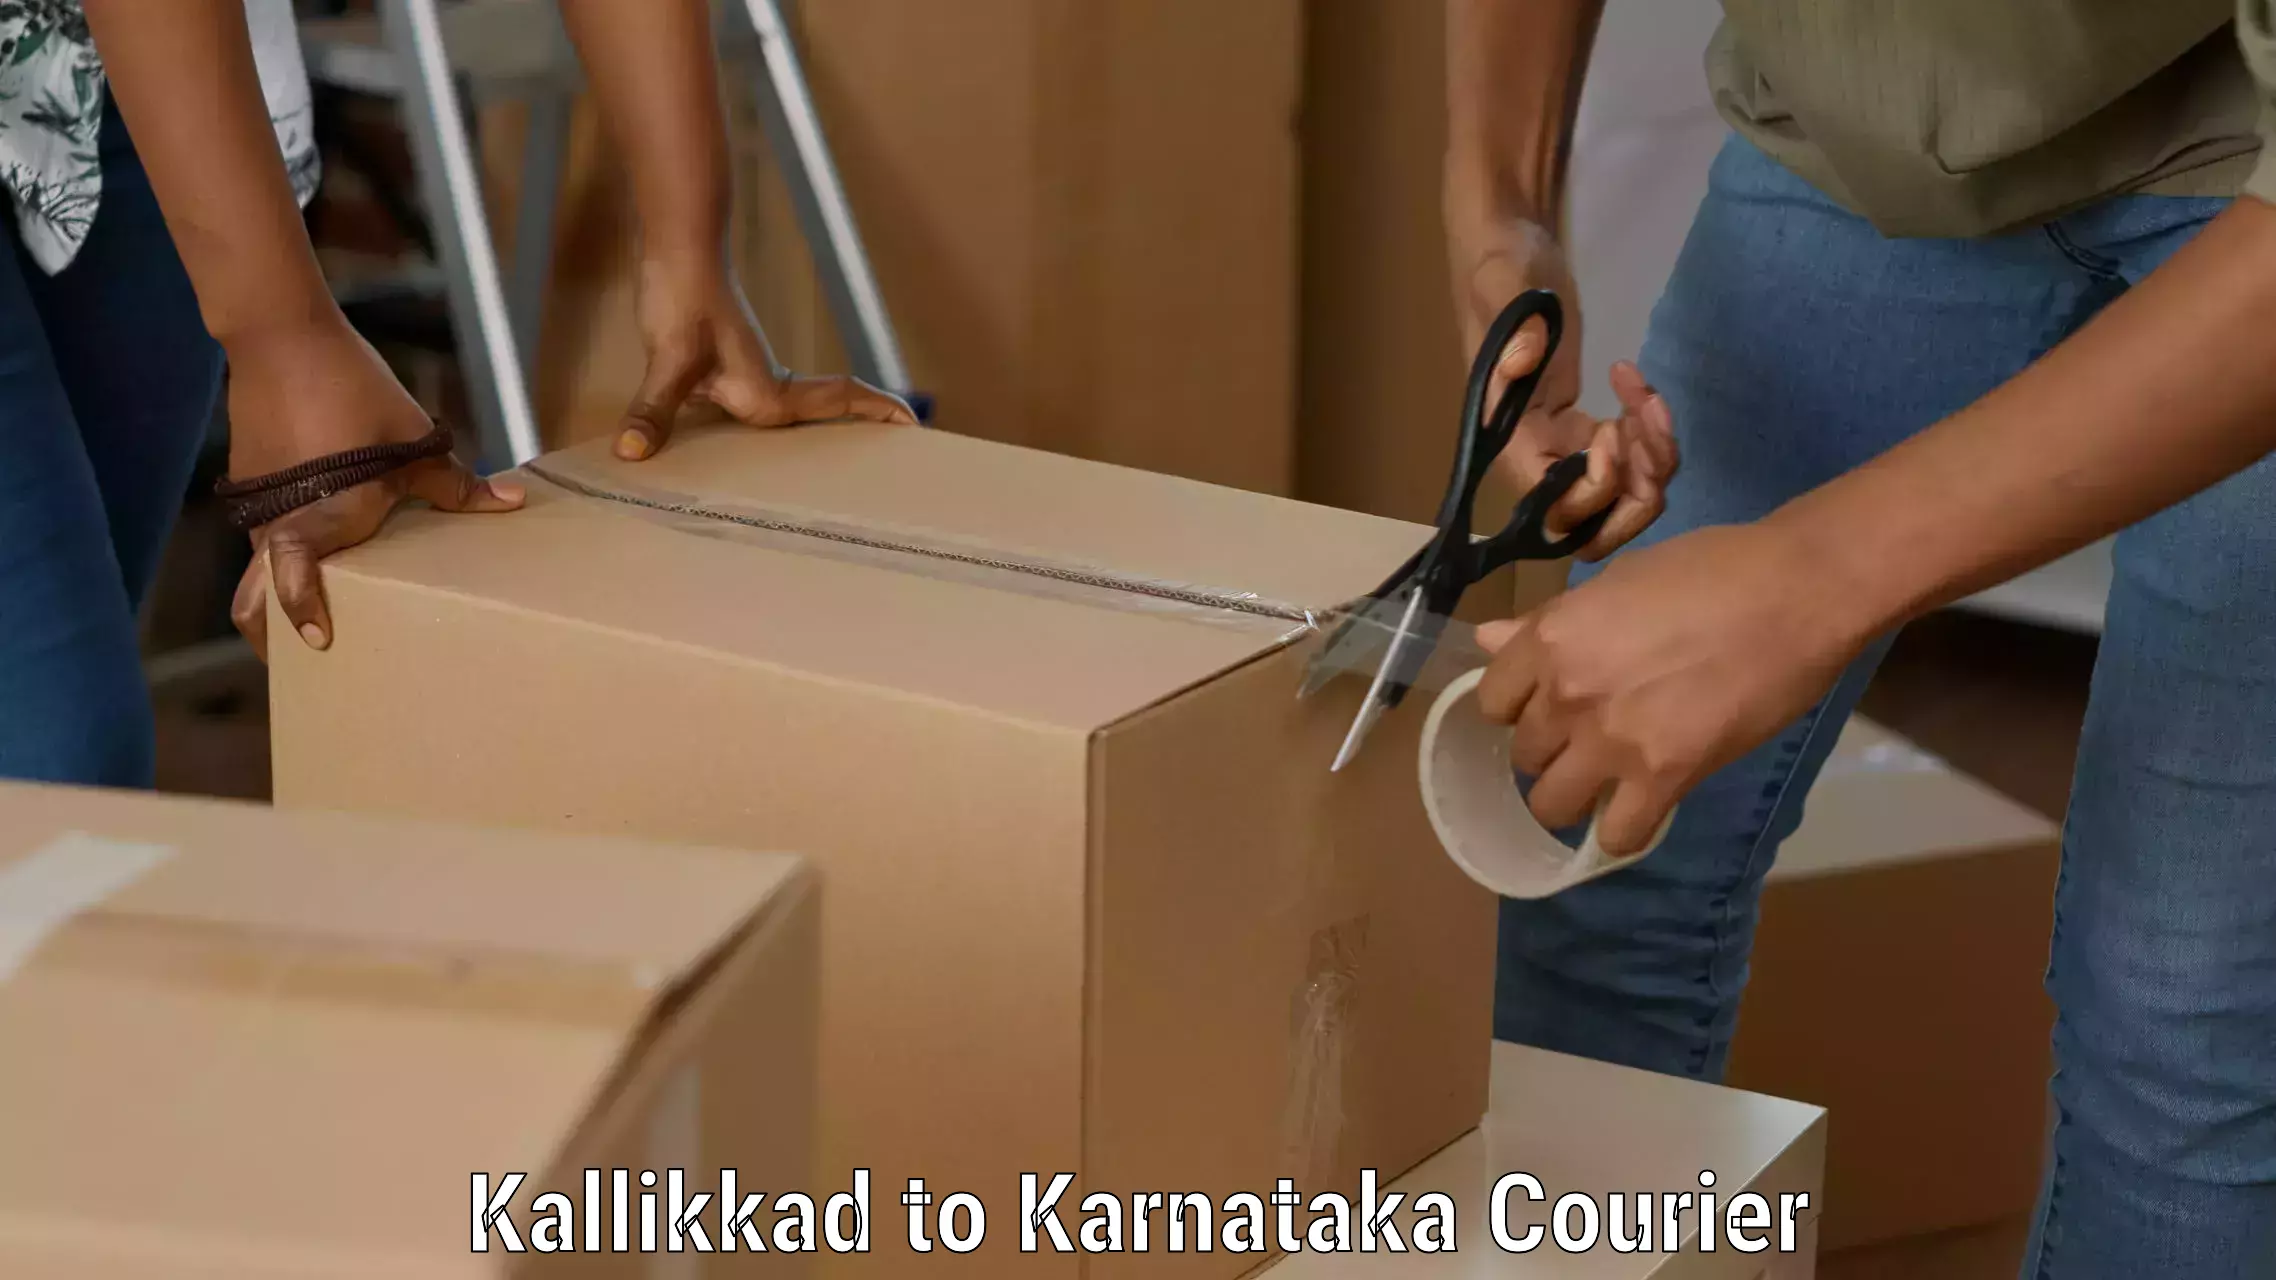 Full-service courier options Kallikkad to Yellare